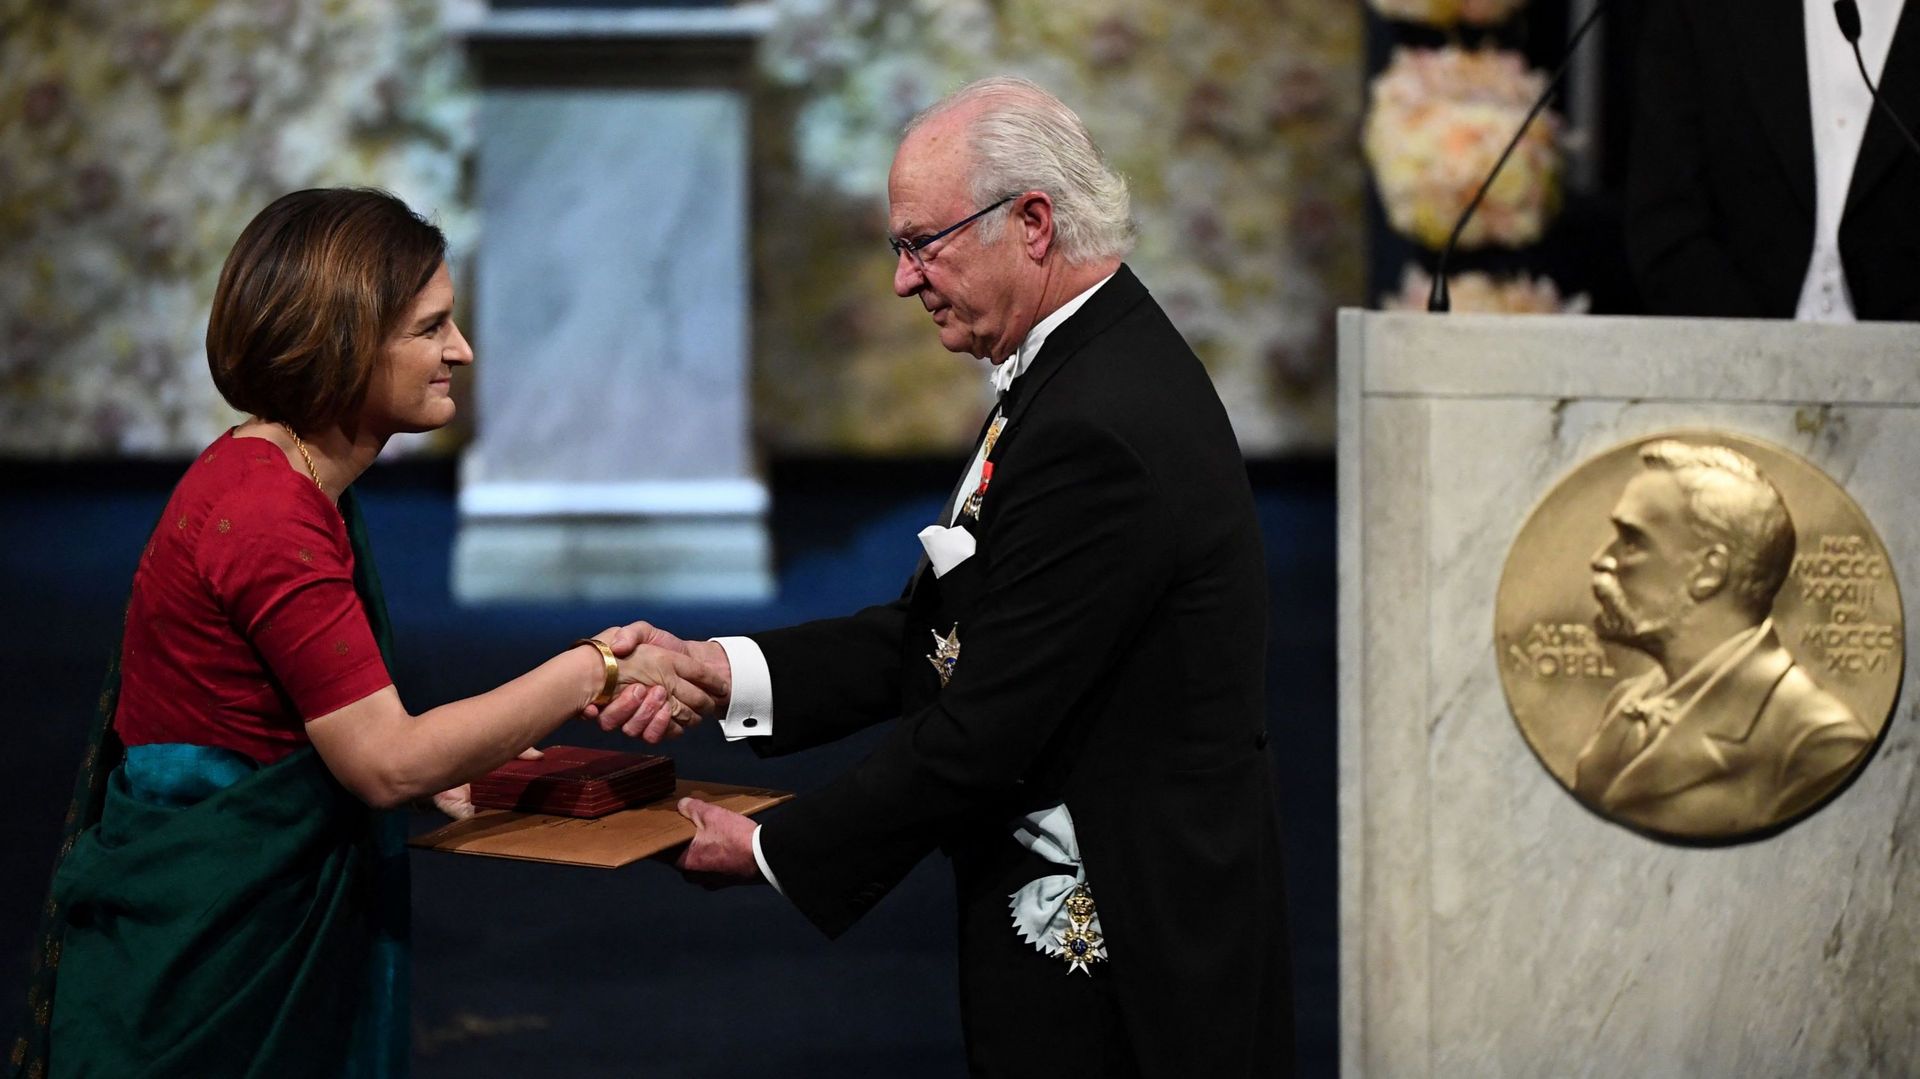 L’économiste franco-américaine Esther Duflo reçoit son prix de la Banque de Suède en sciences économiques en mémoire d’Alfred Nobel des mains du roi Carl XVI Gustaf de Suède lors de la cérémonie de remise des prix Nobel 2019, le 10 décembre 2019 au Concer